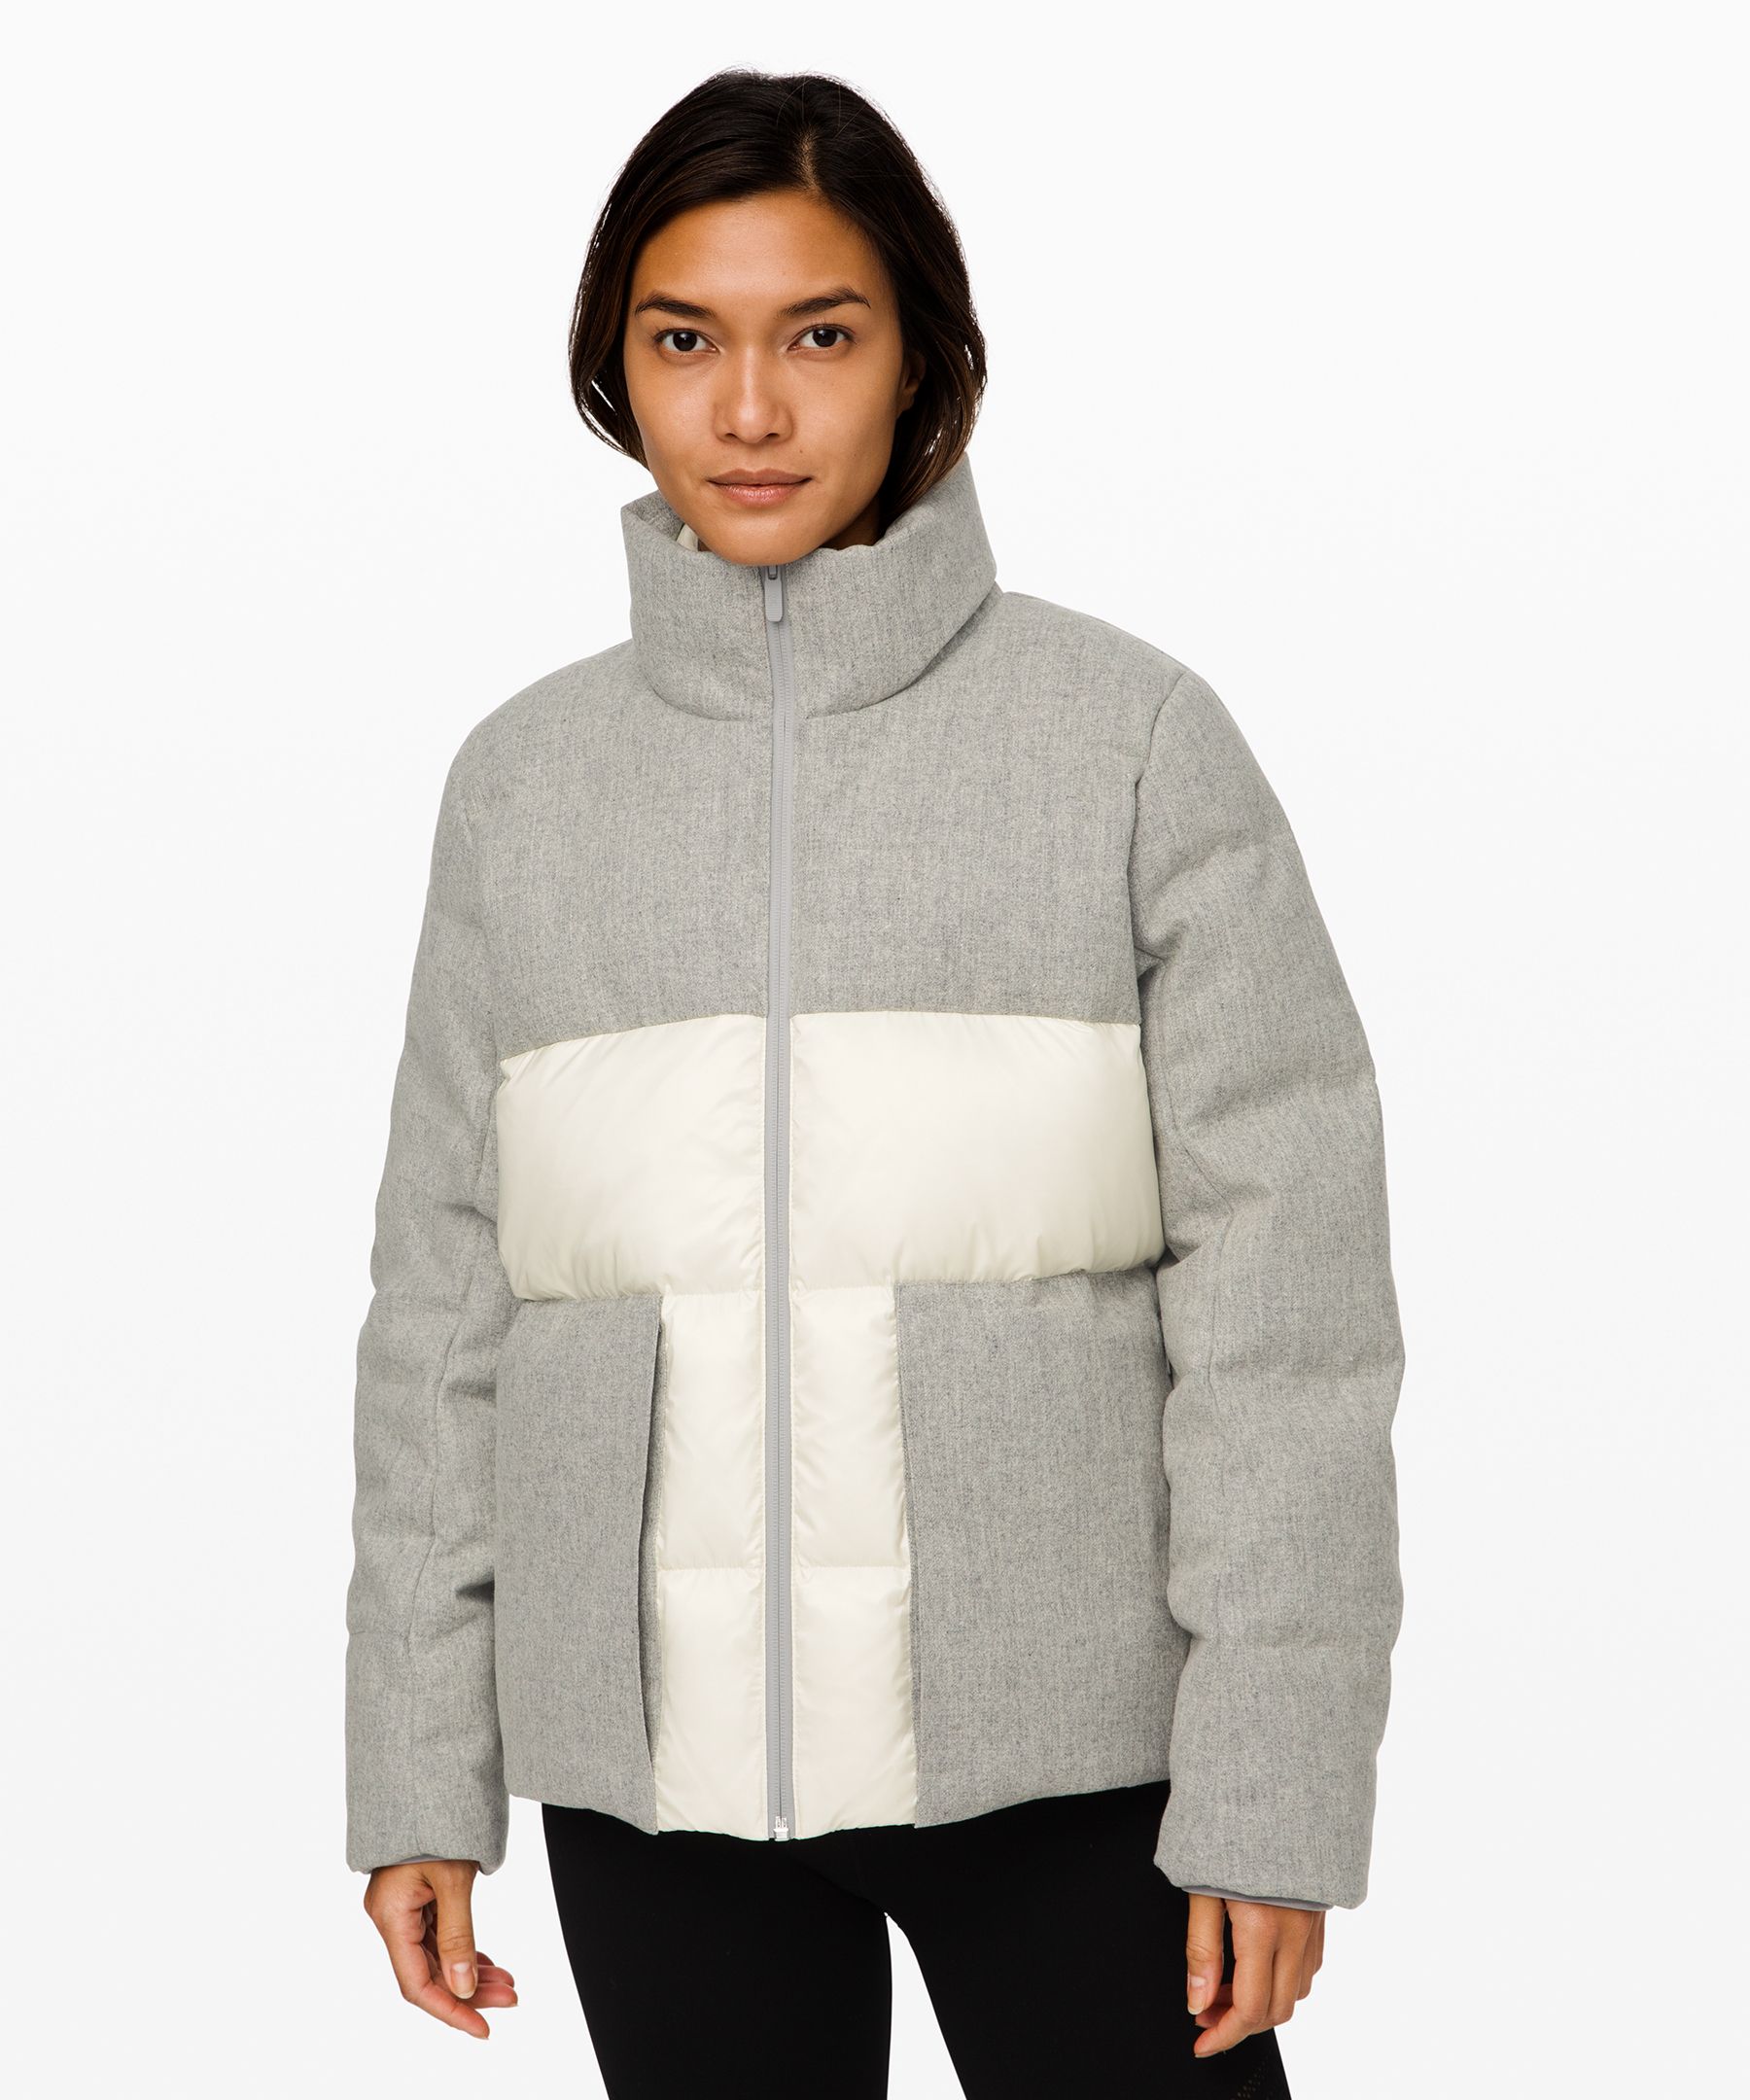 lululemon wool jacket